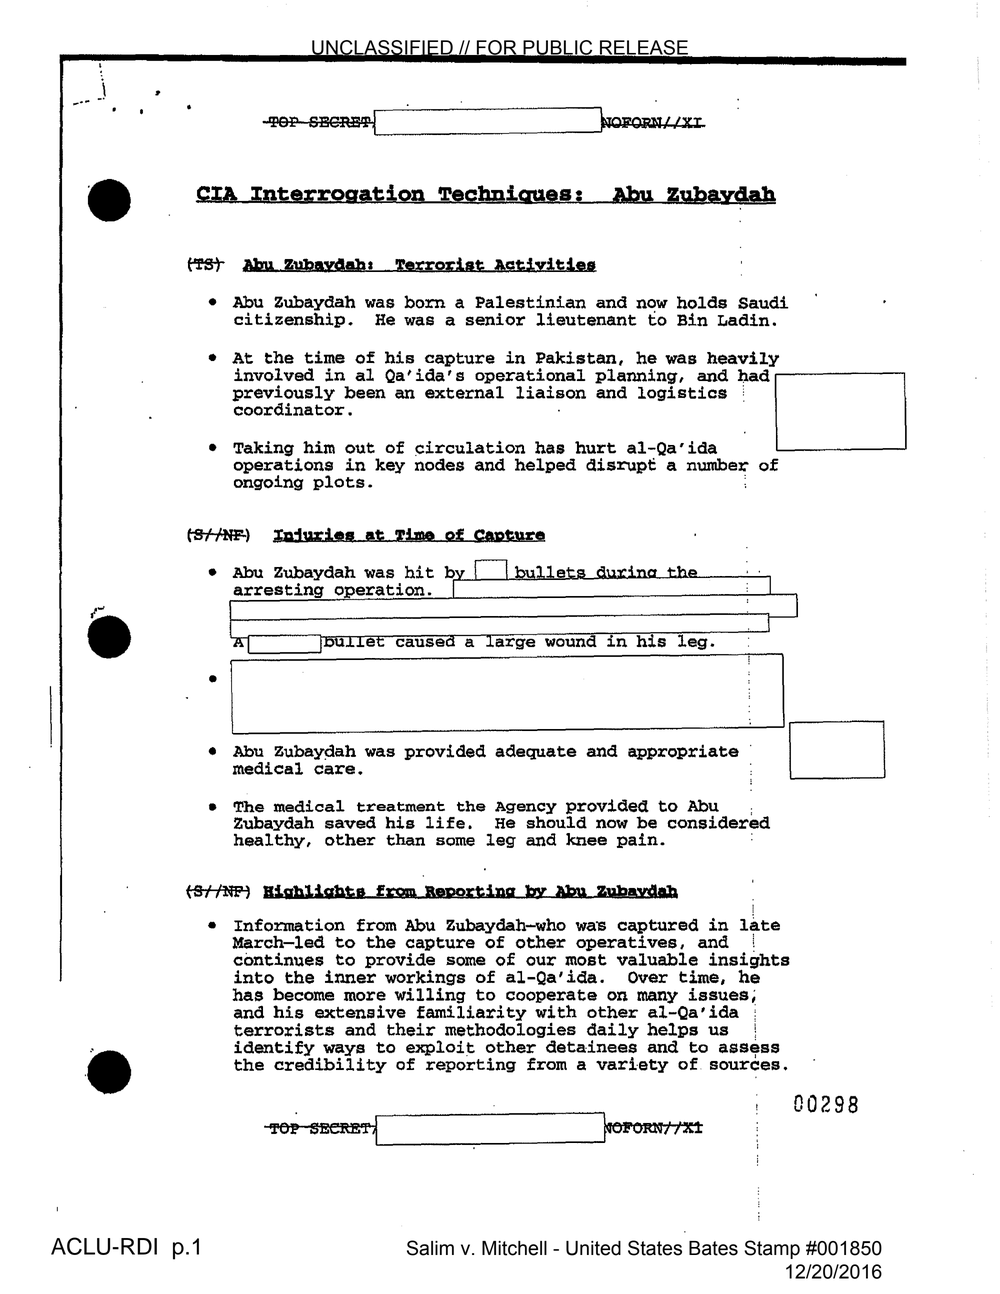 CIA Interrogation Techniques: Abu Zubaydah